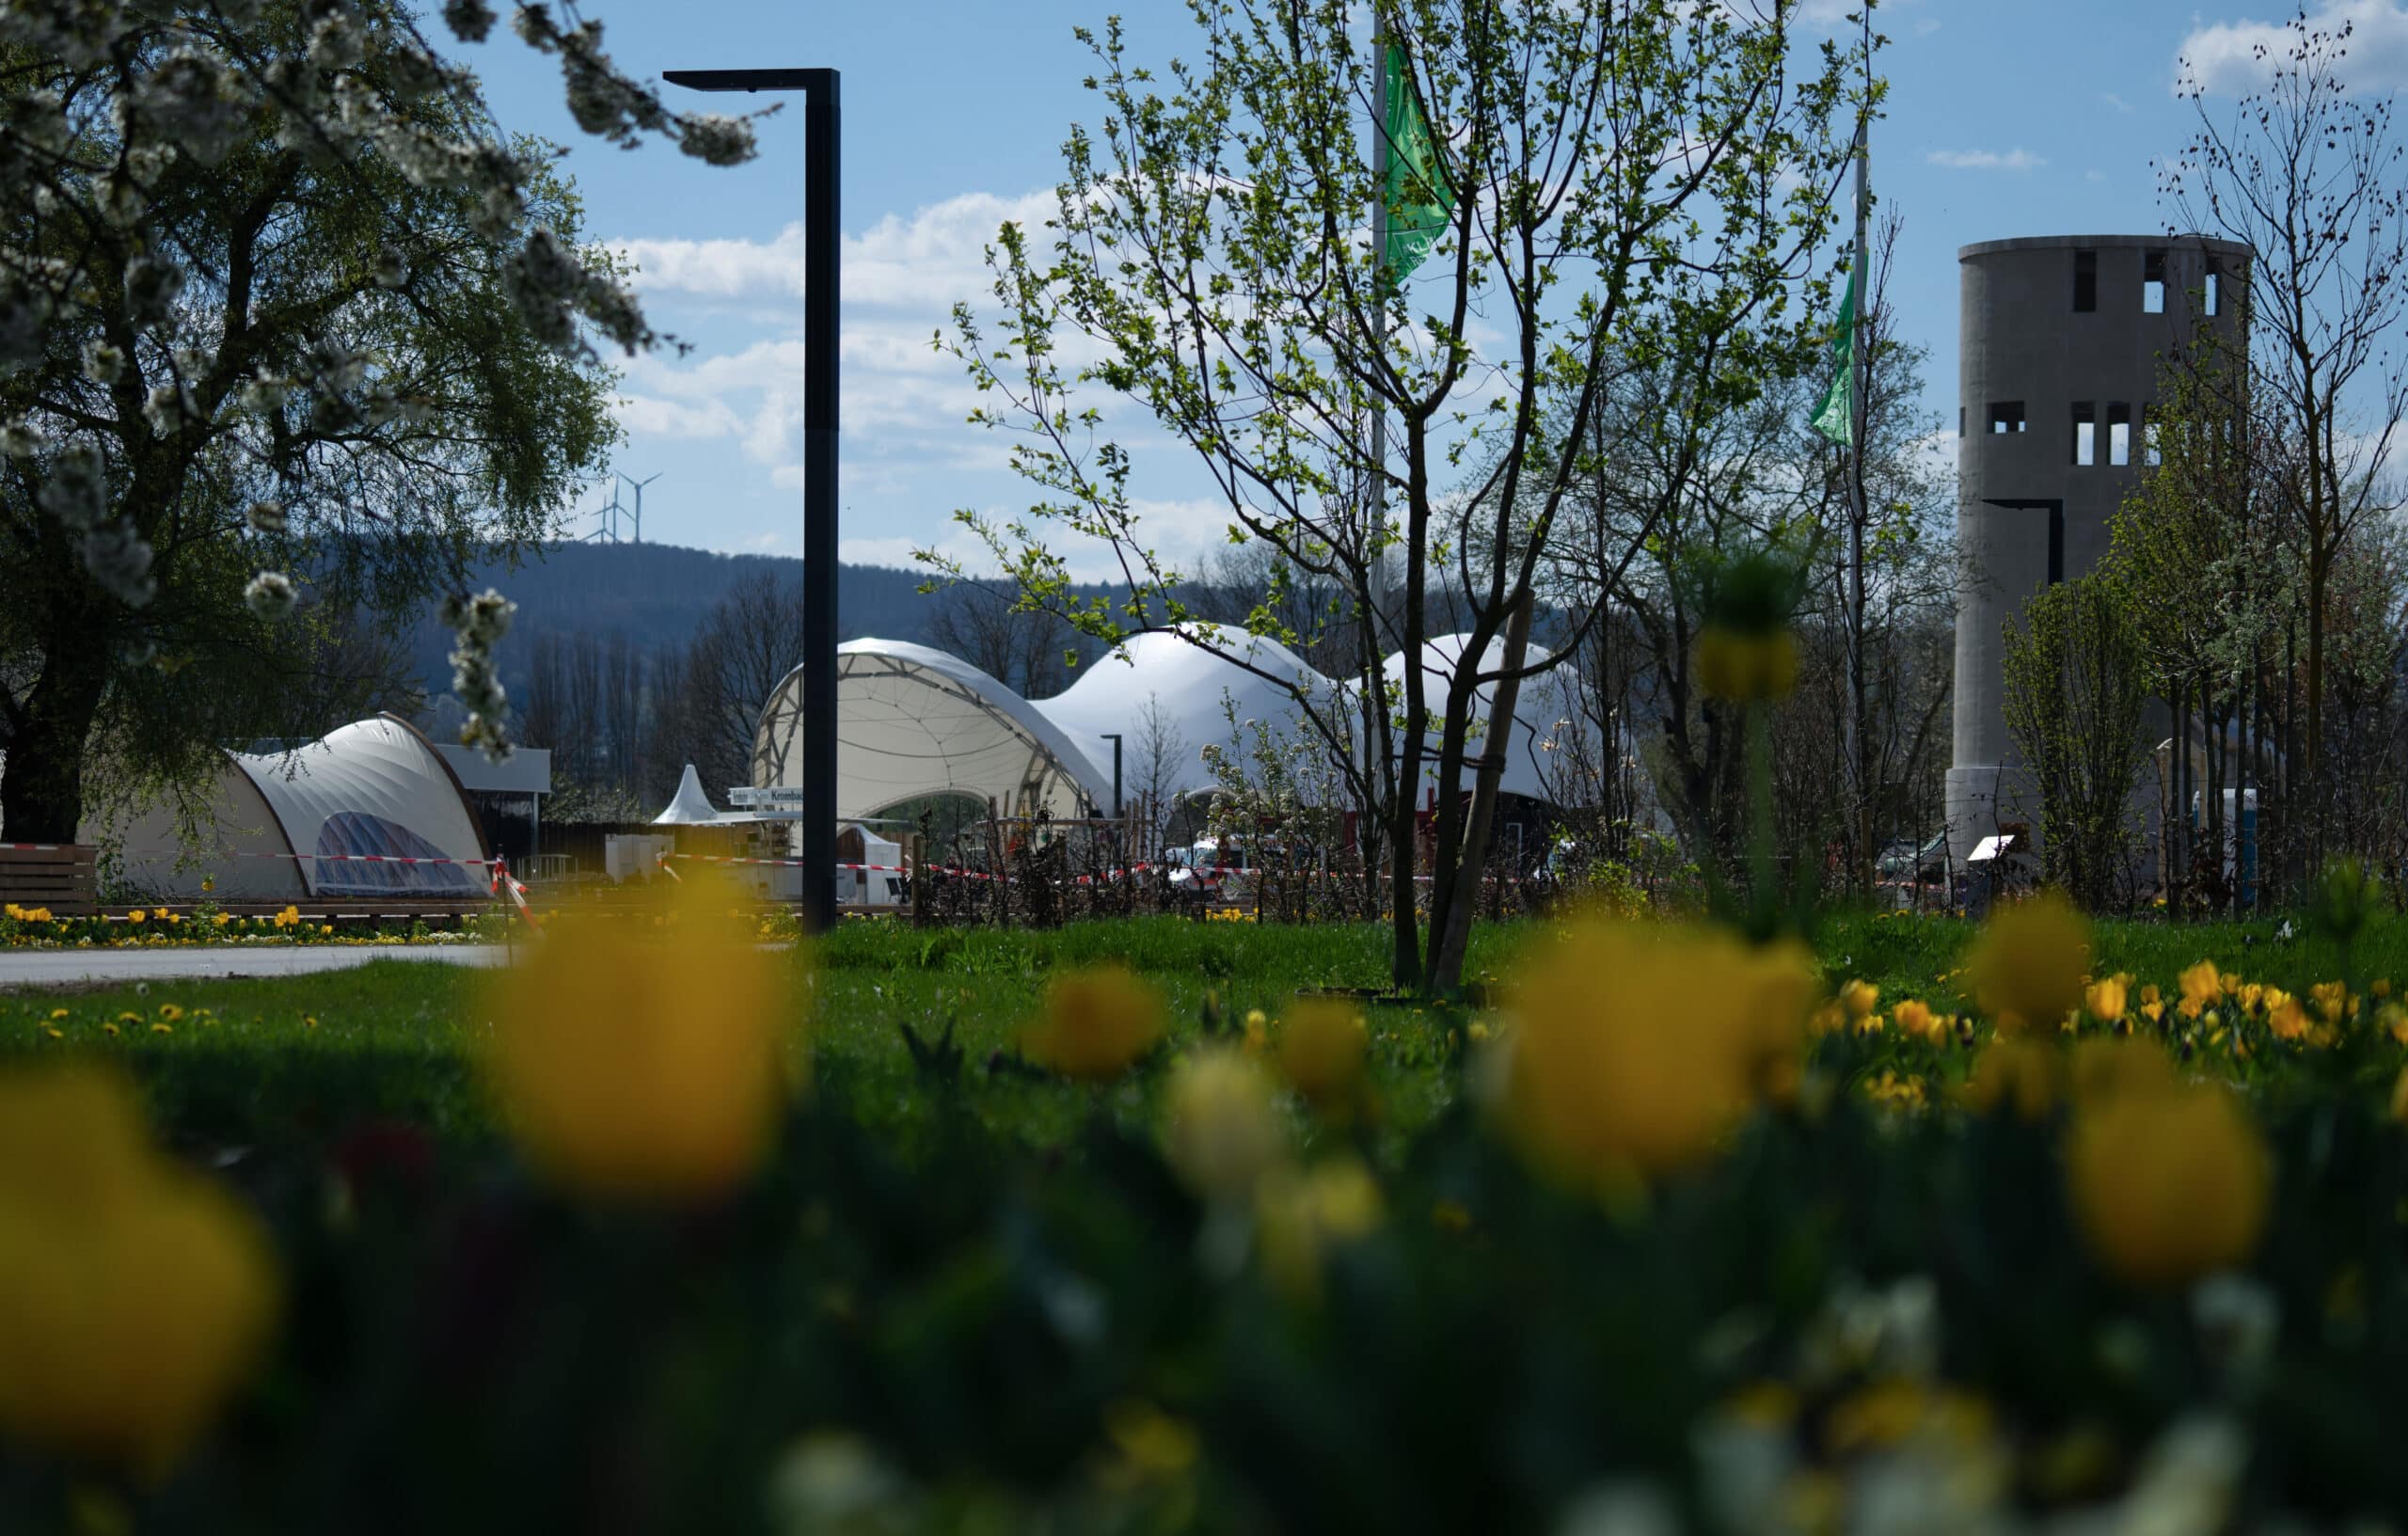 Blumenfeld mit überdachten Bühne und Turm im Hintergrund, auf der Landesgartenschau Höxter